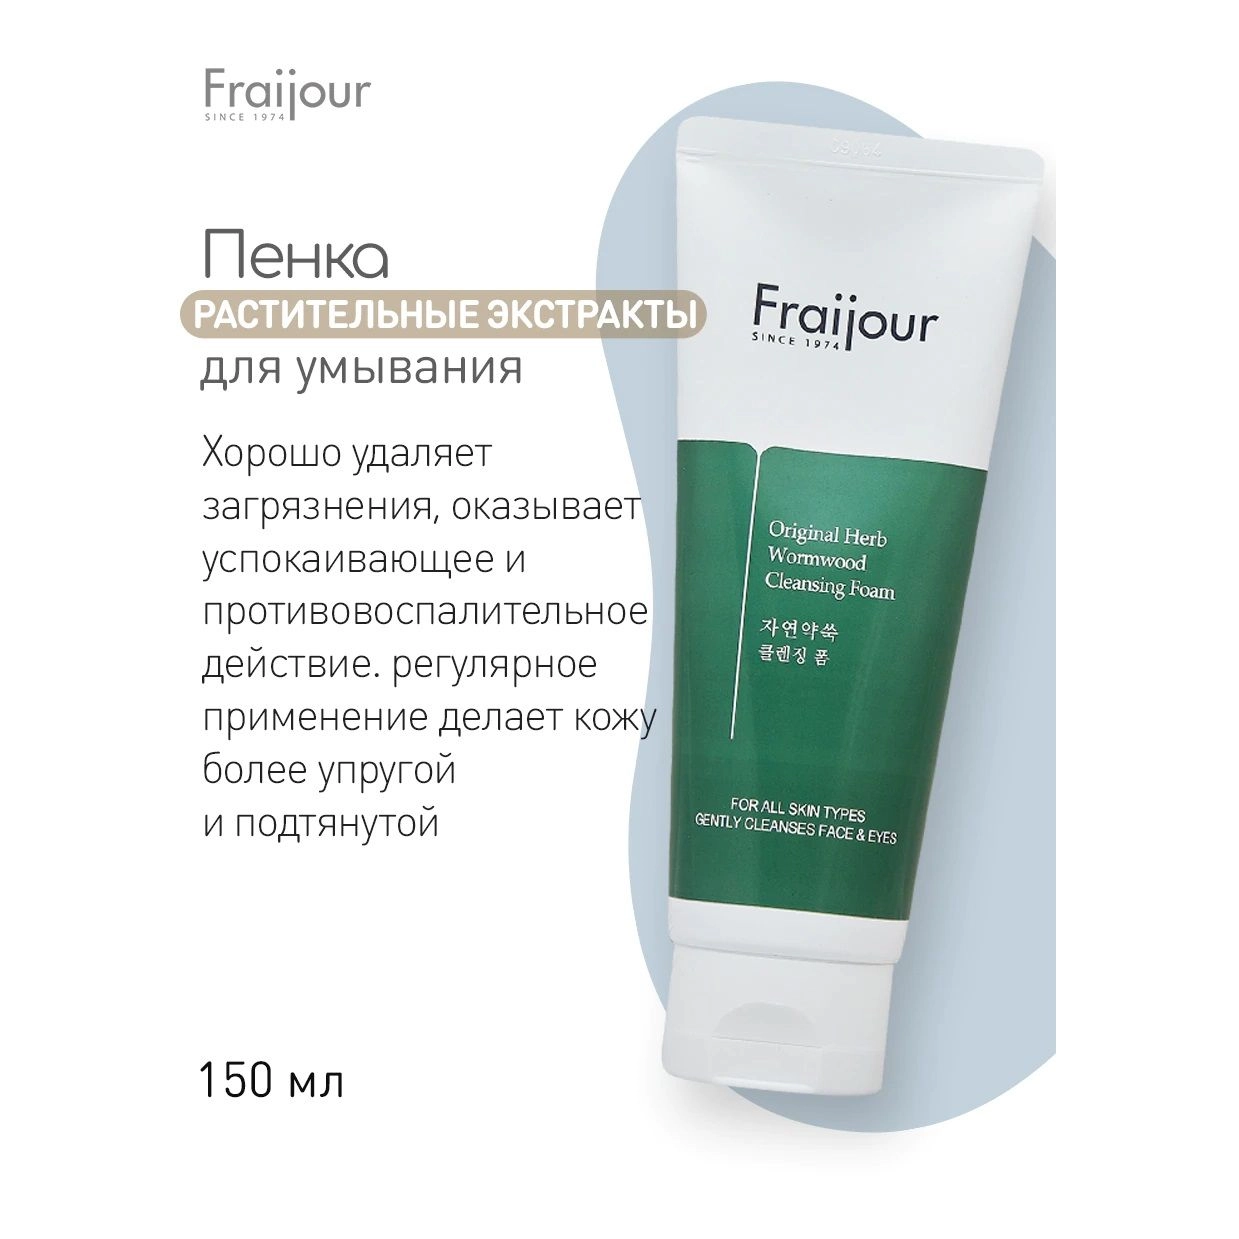 Пенка для умывания для чувствительной кожи с экстрактом полыни - Fraijour Original Herb Wormwood Cleansing Foam, 150 мл - фото N5